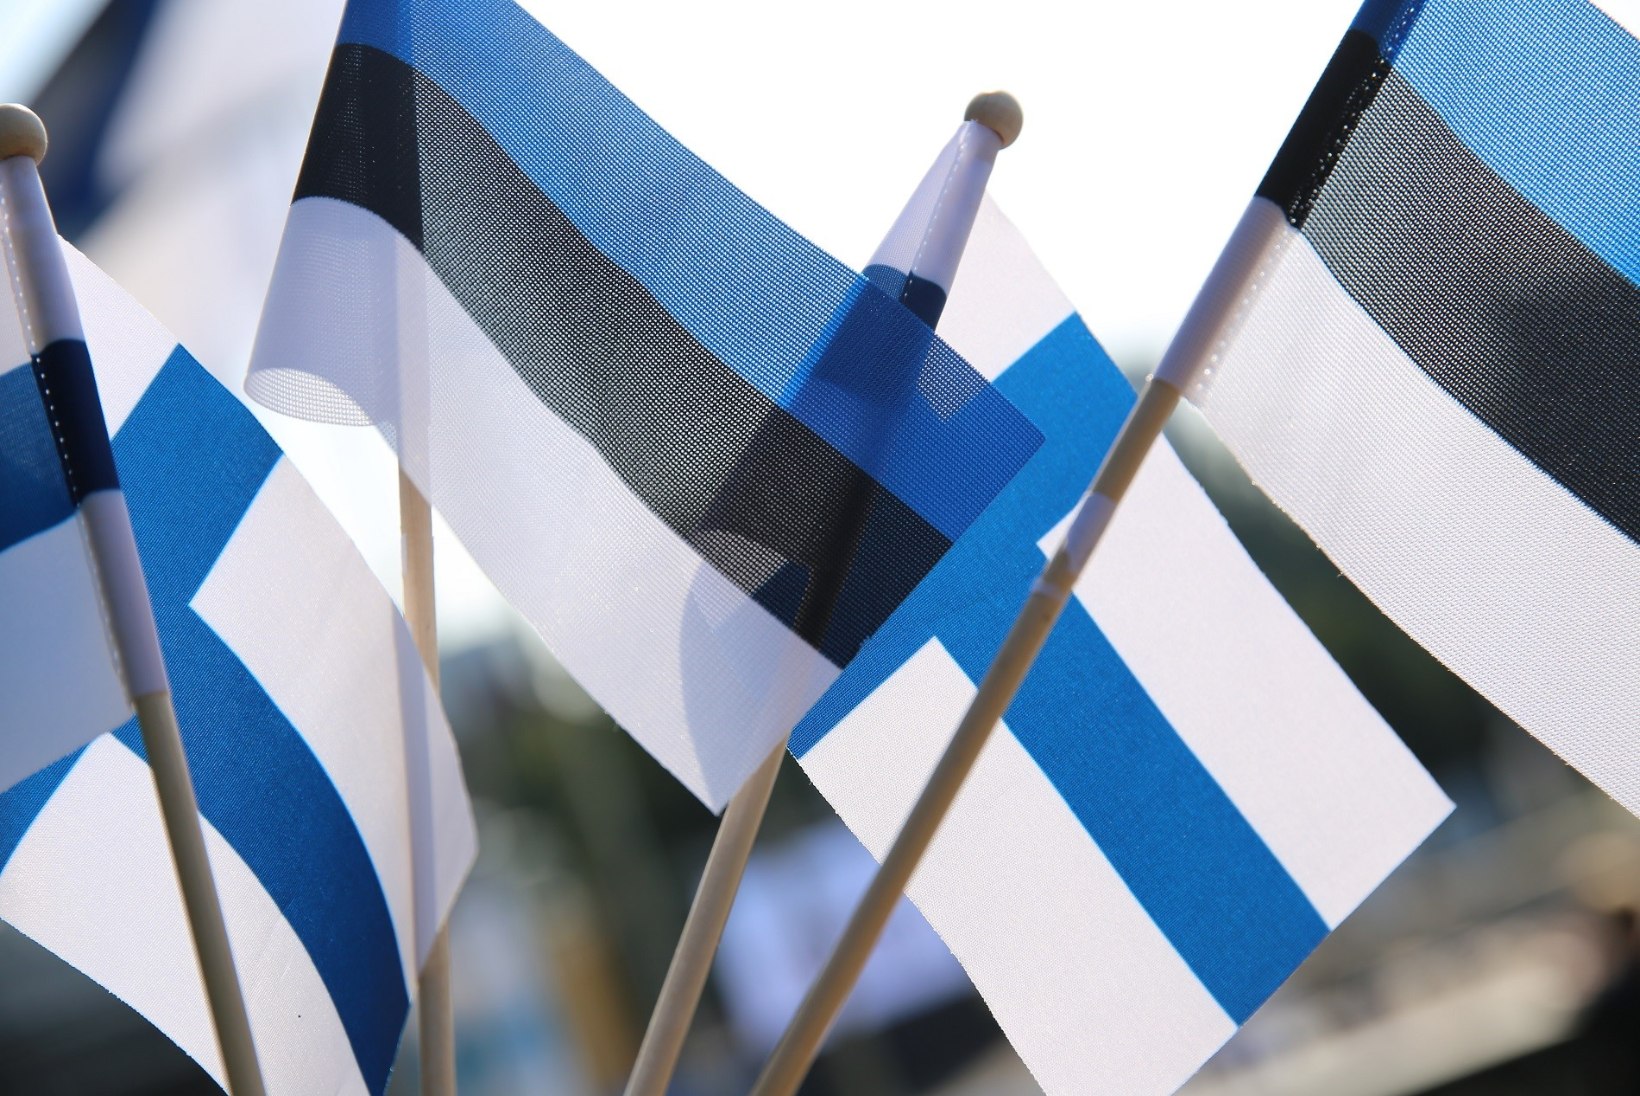 Soome 100. juubeliaastapäev tipneb Eestis lipupäeva ja ilutulestikuga  